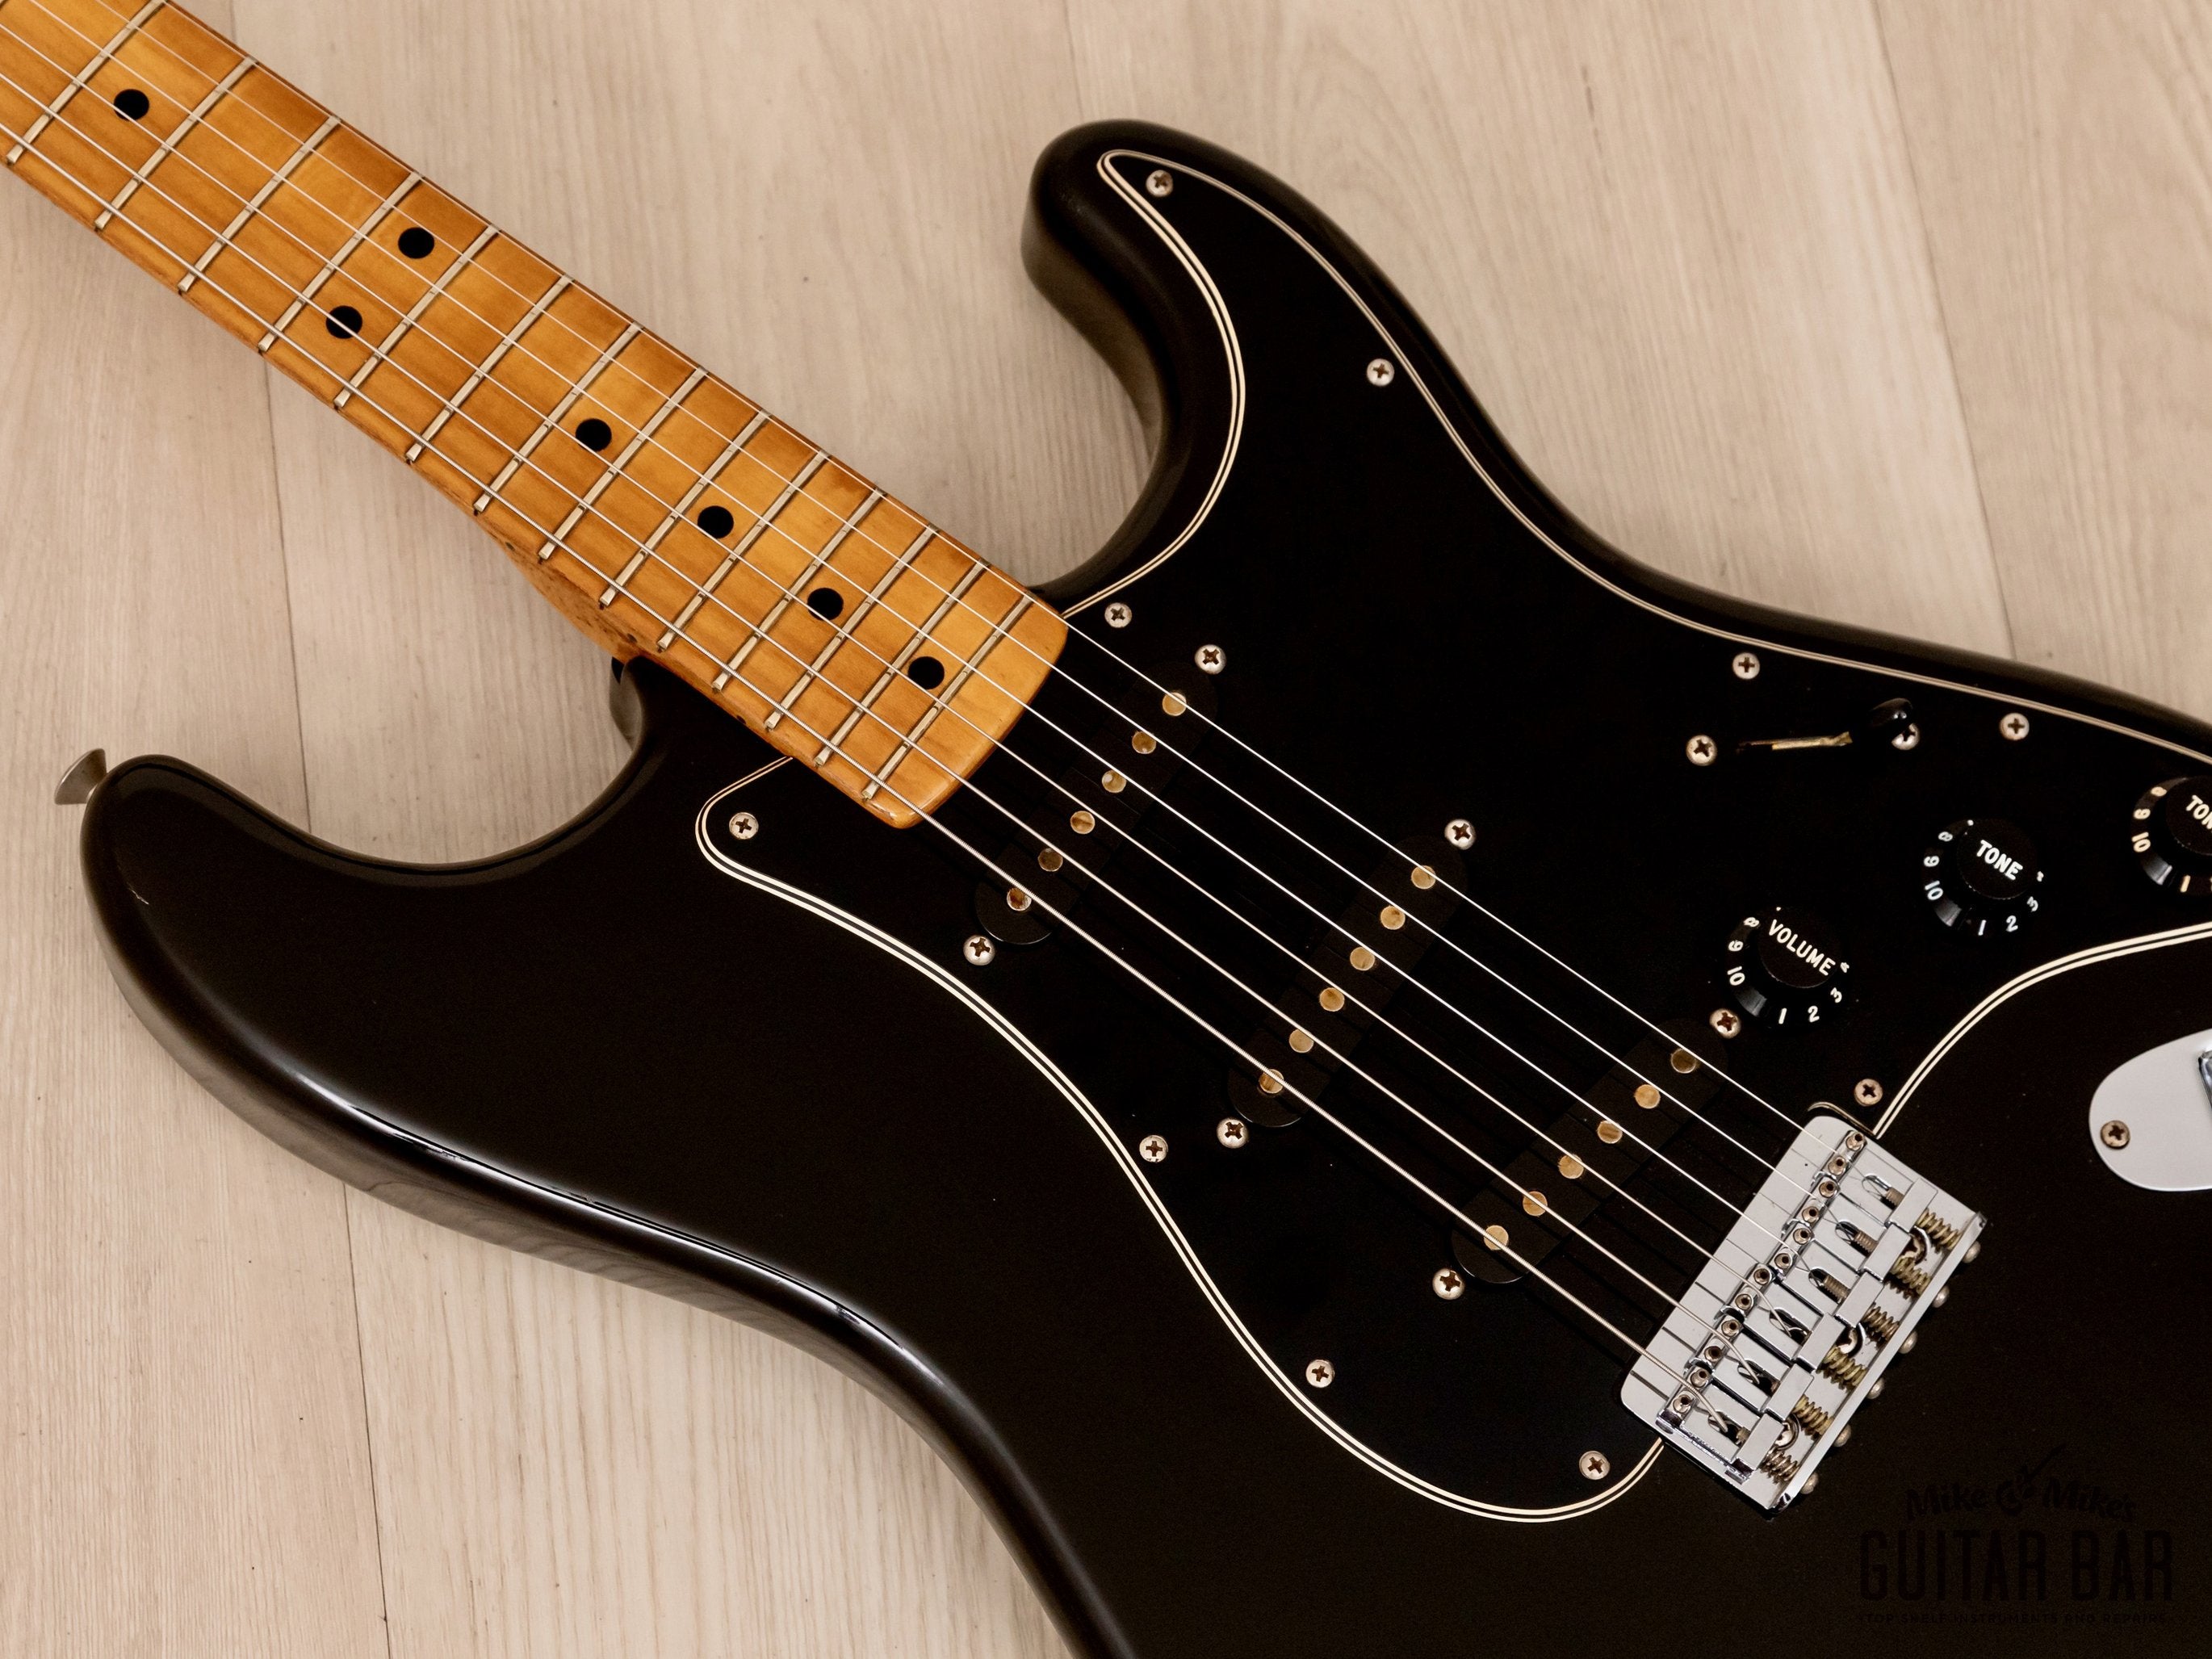 1976 Fender Stratocaster Hardtail Vintage Guitar Black, 100% Original w/ Case